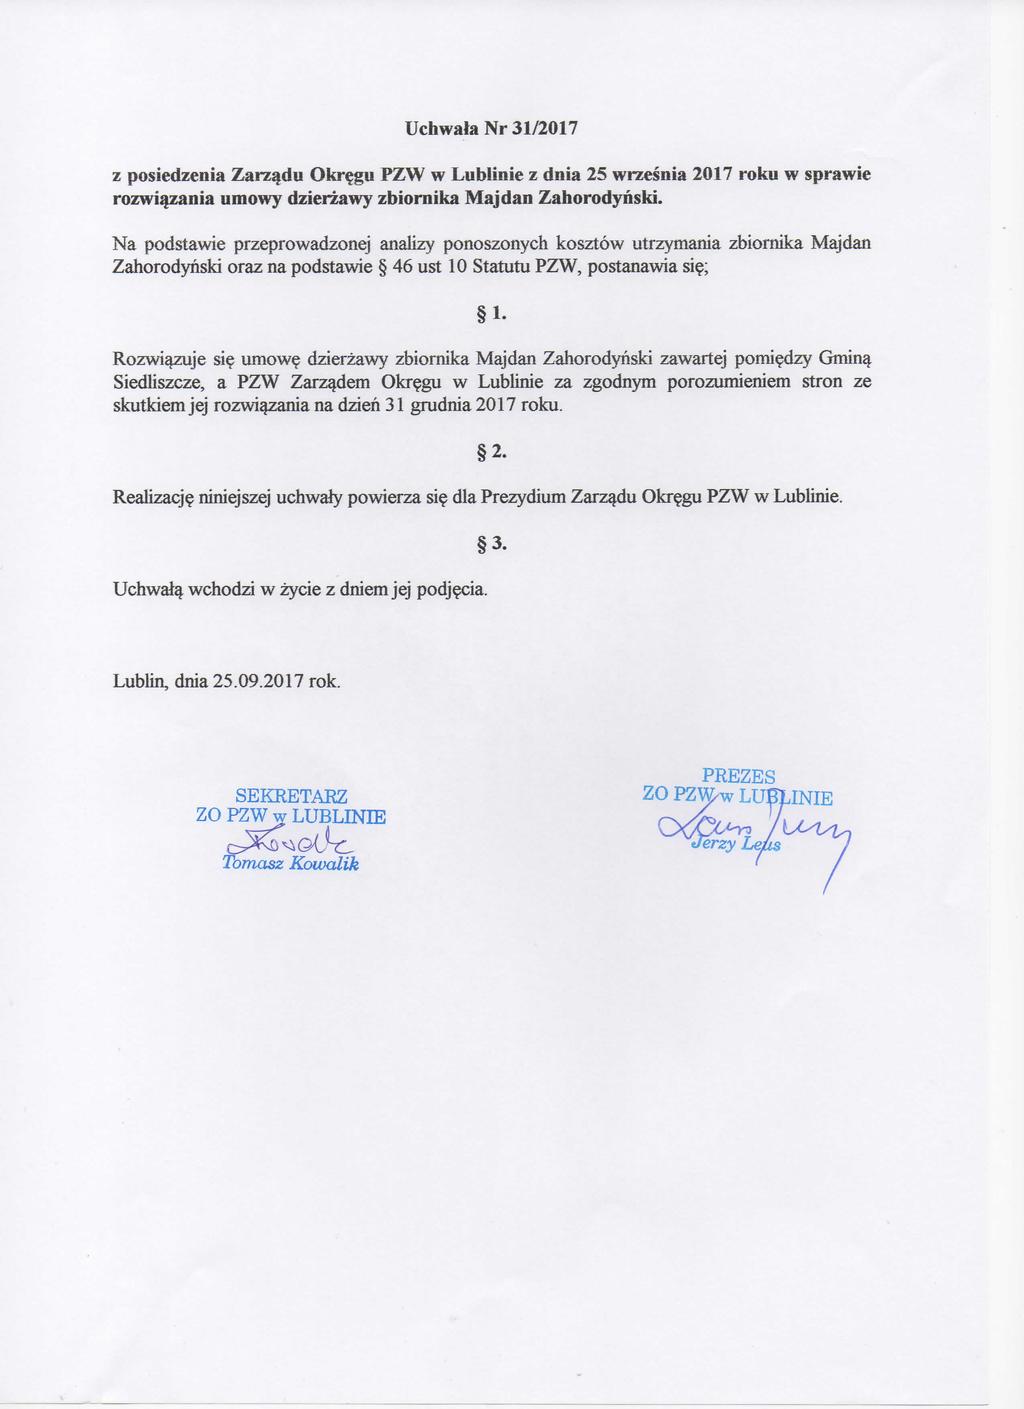 Uchwala Nr 31/2017 z posiedzenia Zarzadu Okregu PZW w Lublinie z dnia 25 wrzesnia 2017 roku w sprawie rozwiazania umowy dzierzawy zbiornika Majdan Zahorodyhski.